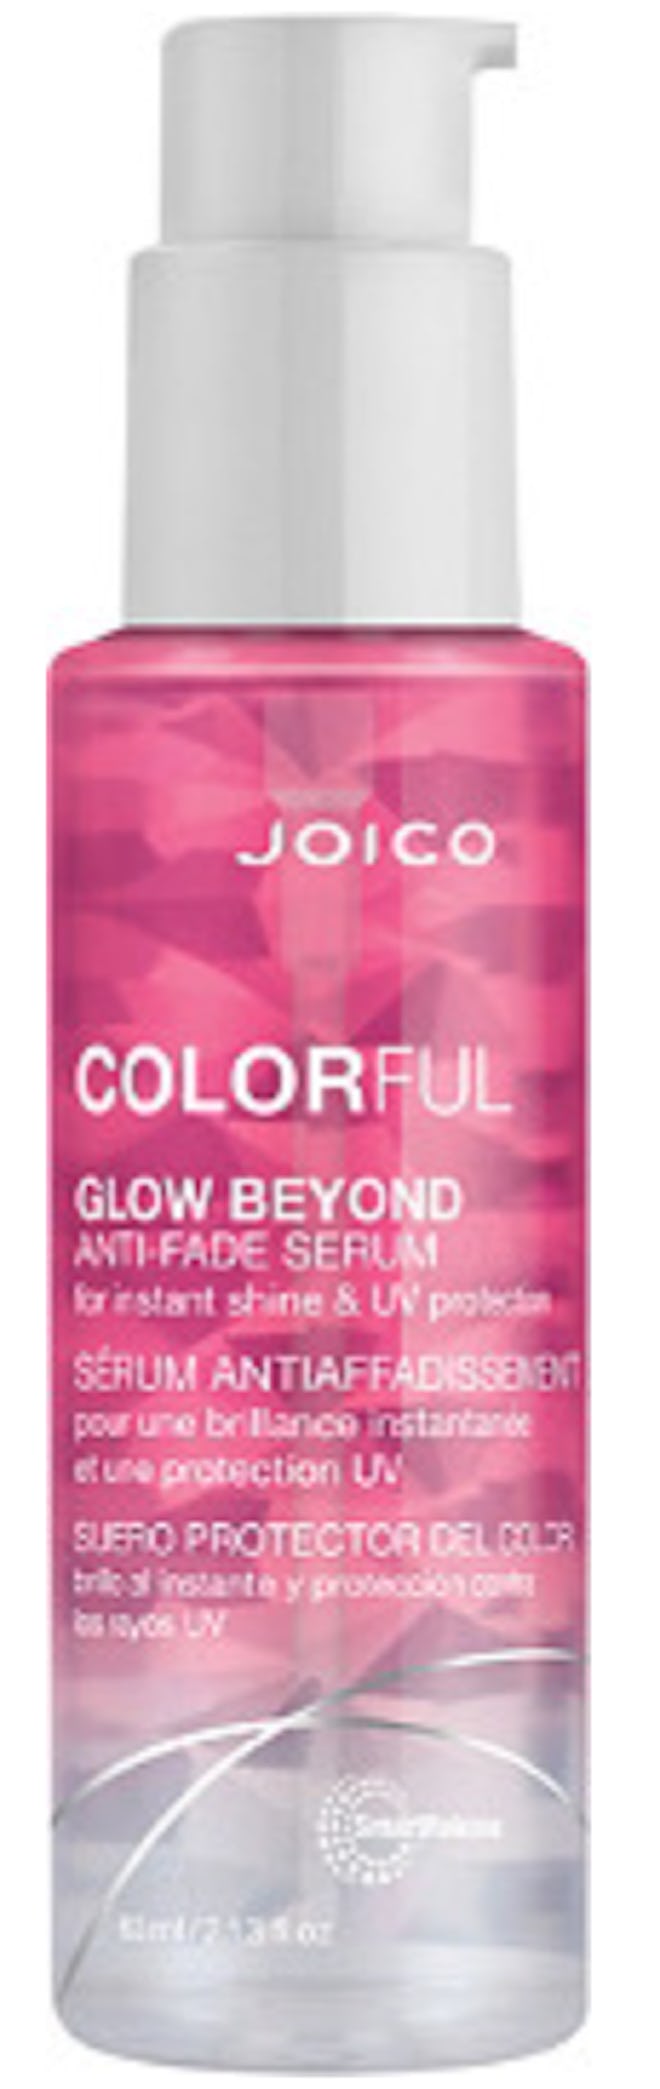 Colorful Glow Anti-Fade Serum